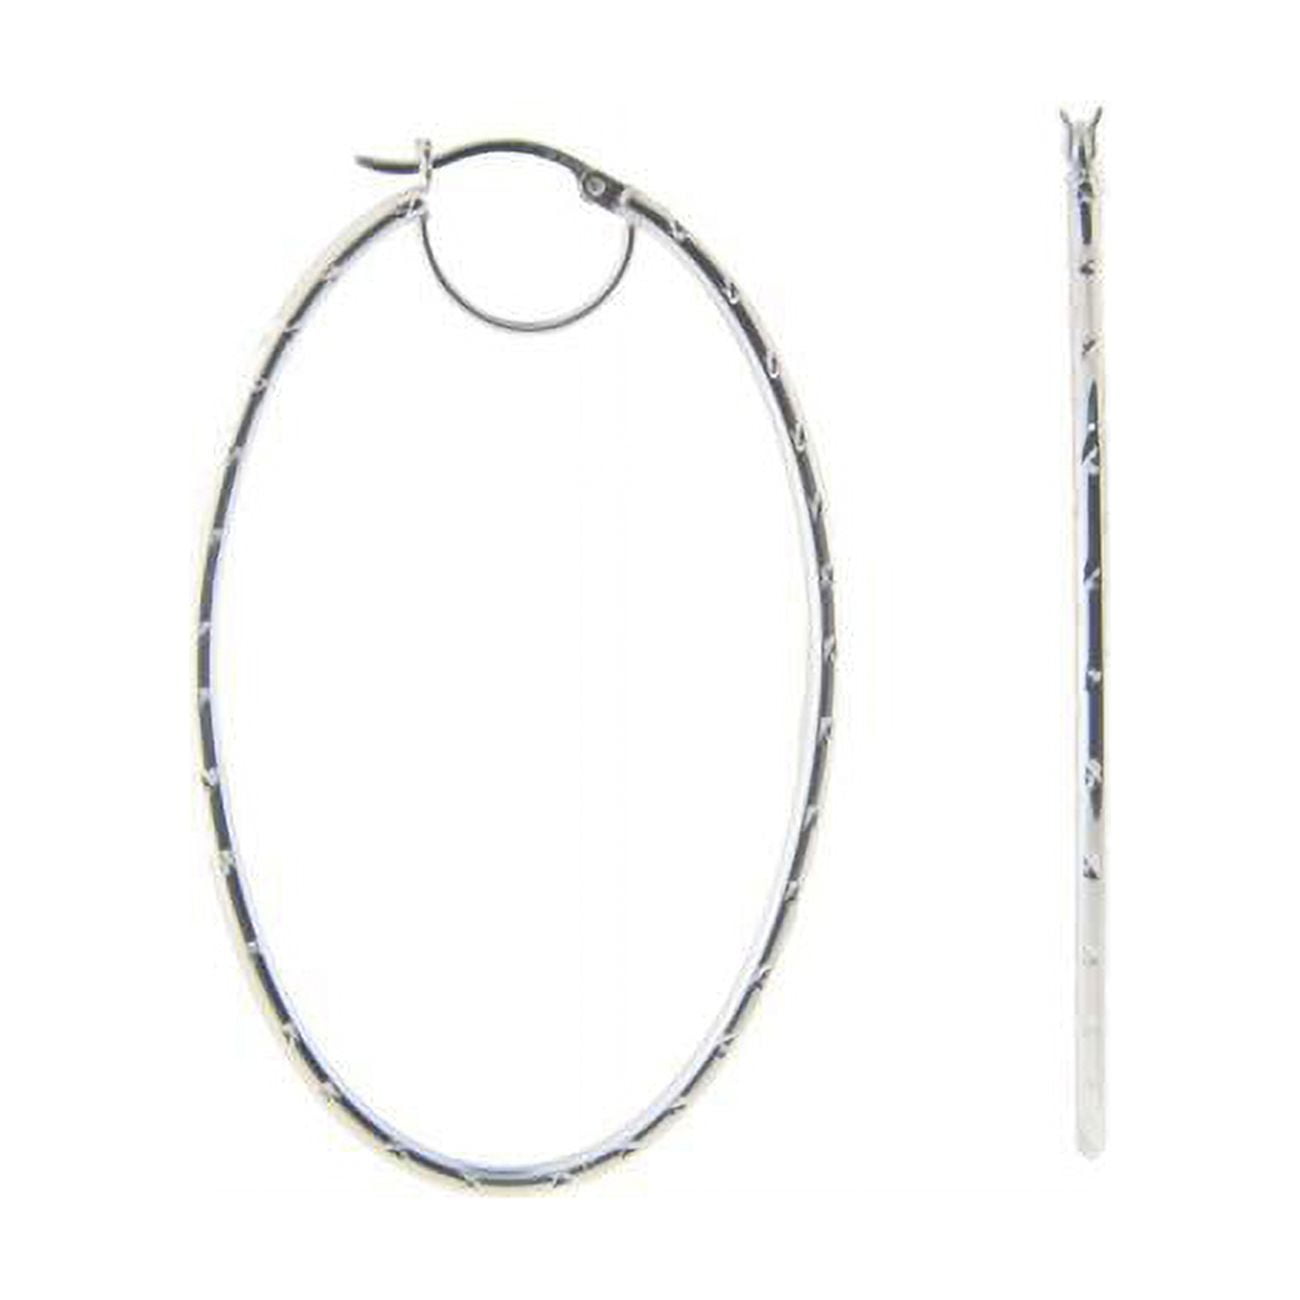 155106 Large Oval Diamond Cut Hoop Earrings In Sterling Silver